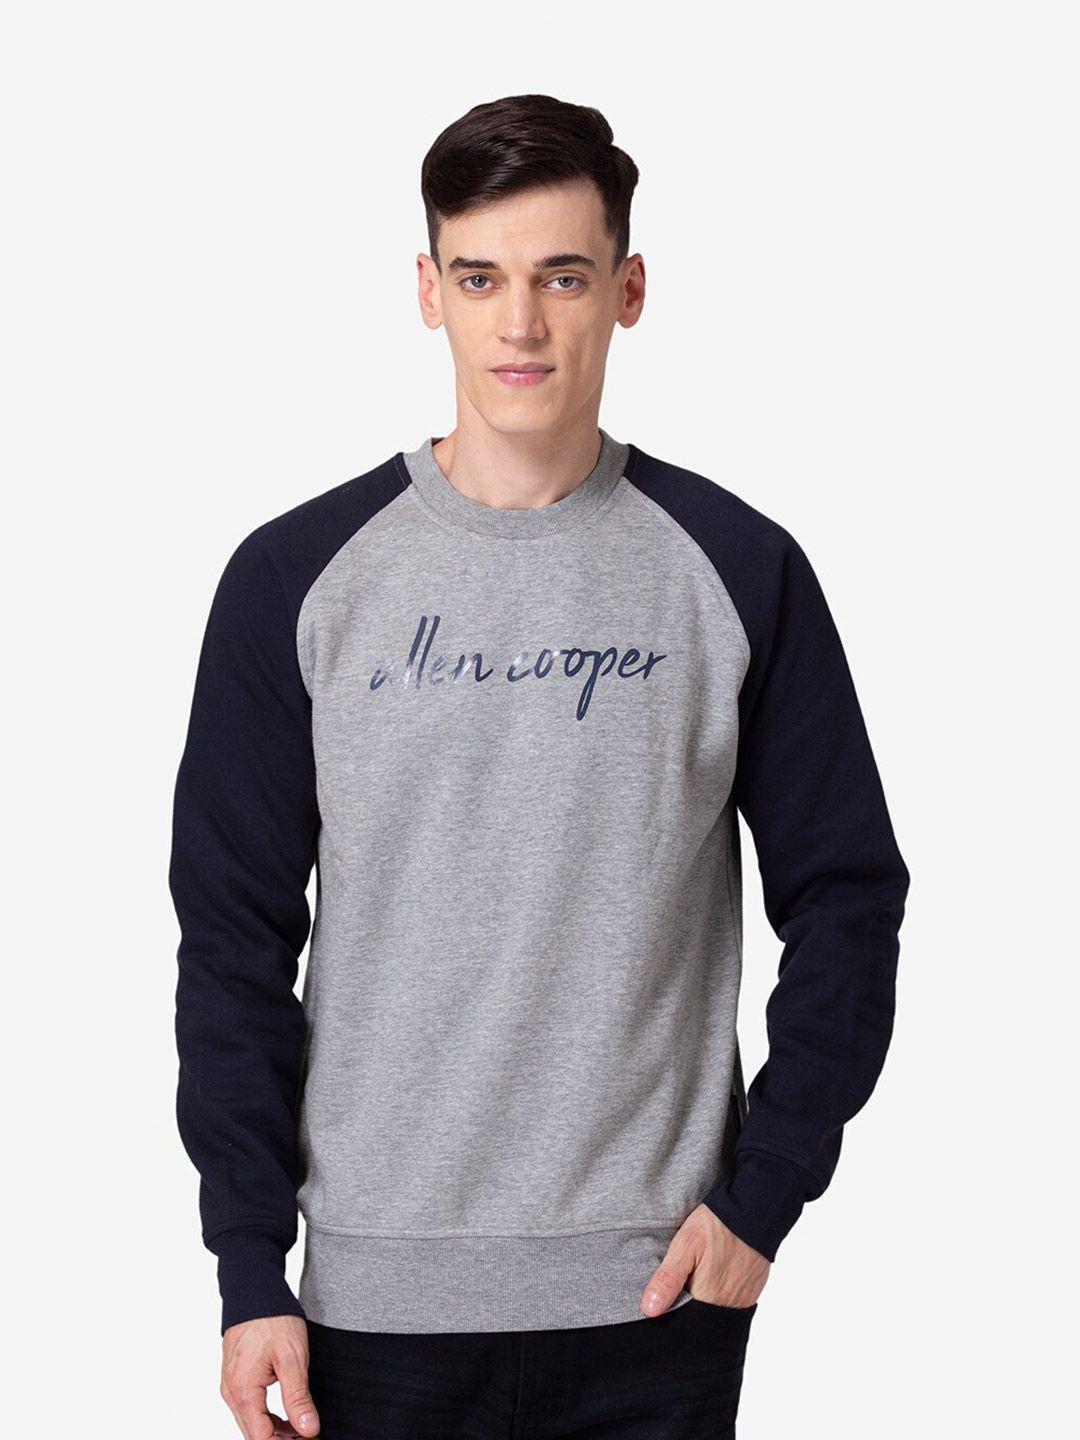 allen-cooper-men-colourblocked-cotton-sweatshirt